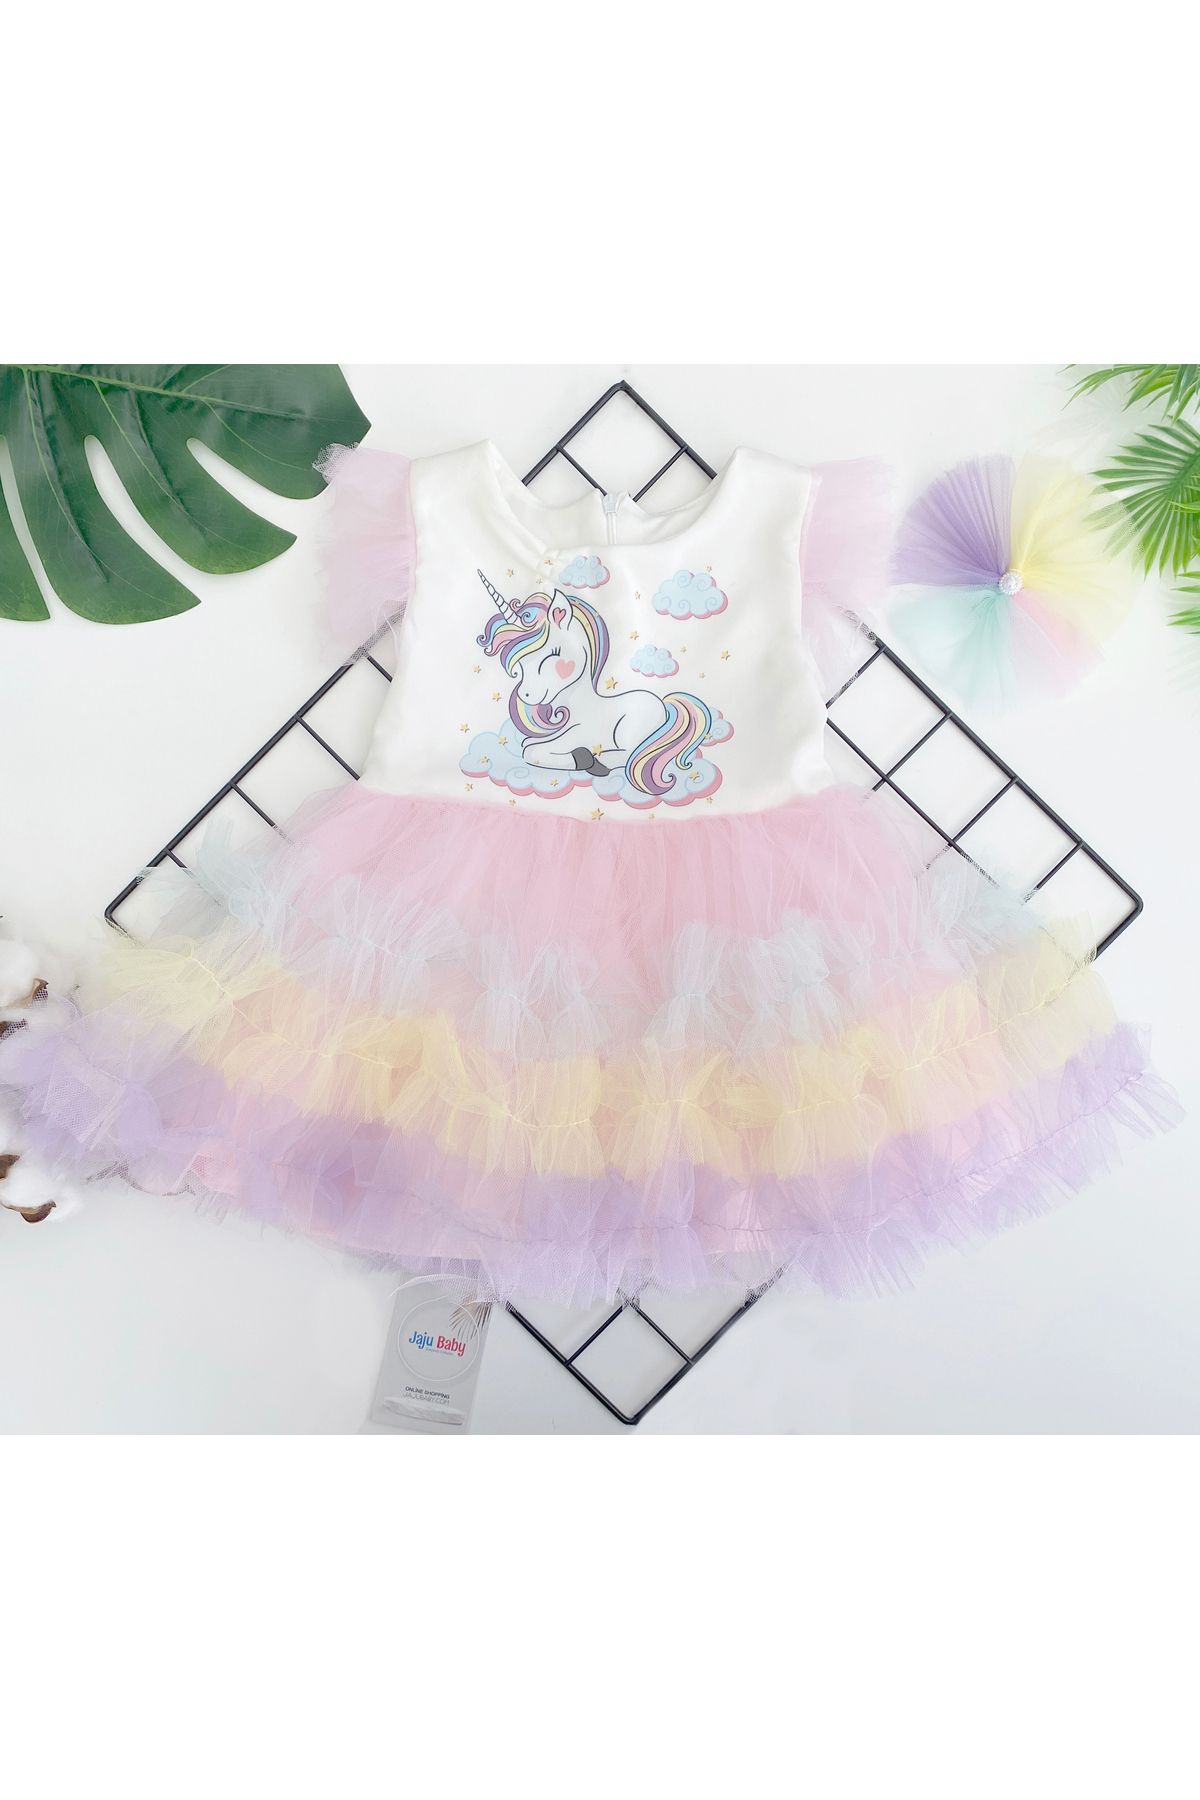 Jaju Baby Kız Çocuk Renkli Tütü Etekli Unicorn Desenli Elbise Ve Toka